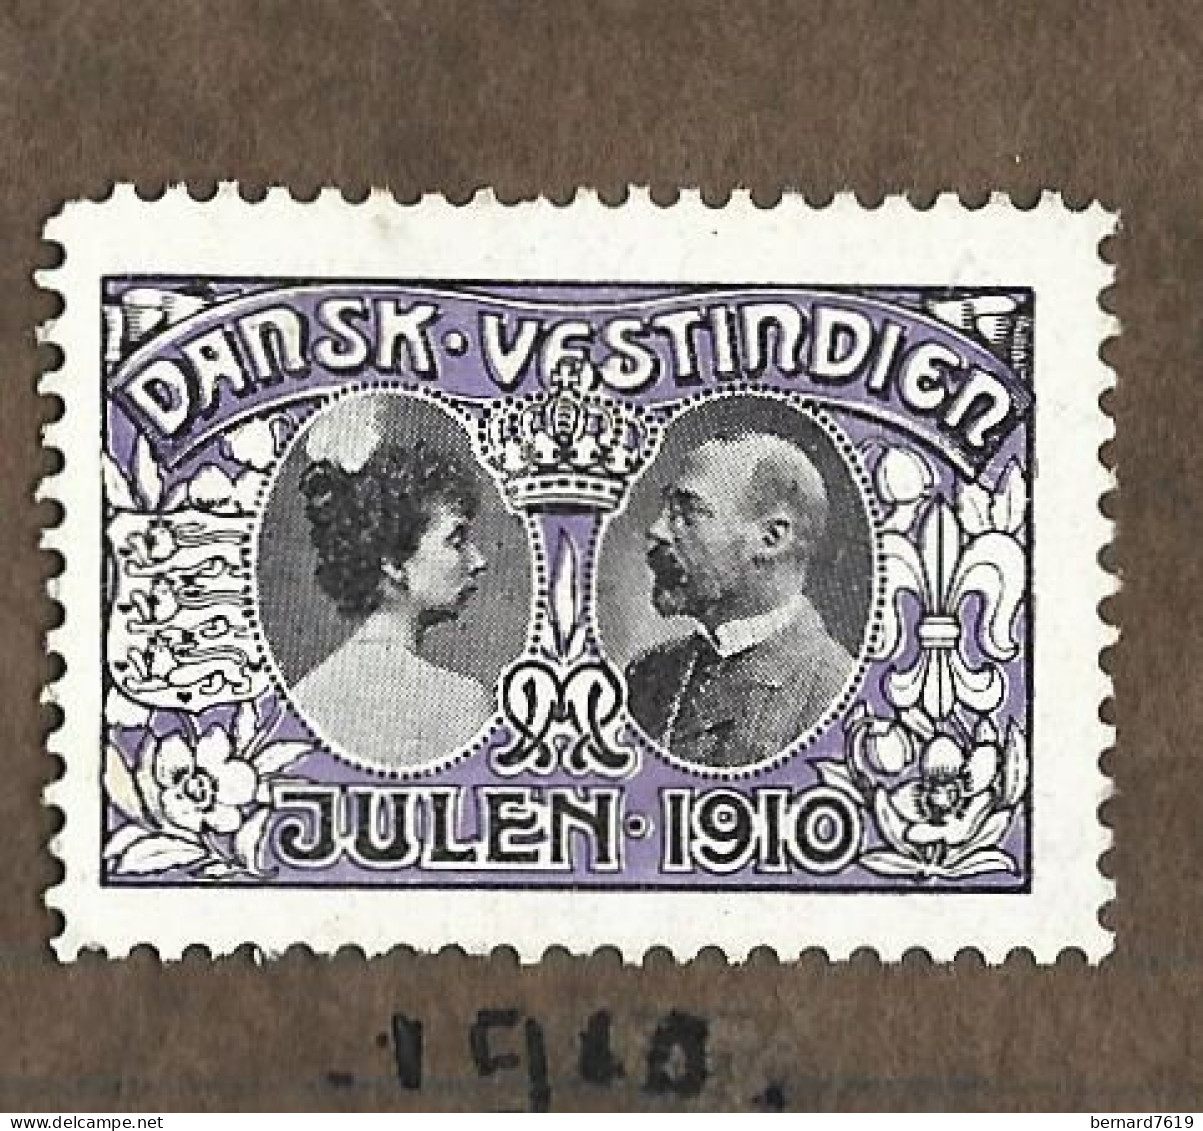 Timbre  -   Antilles Danoises  -  Croix Rouge - Dansk  Vestindien - Annee   Julen  1910 - Antillen